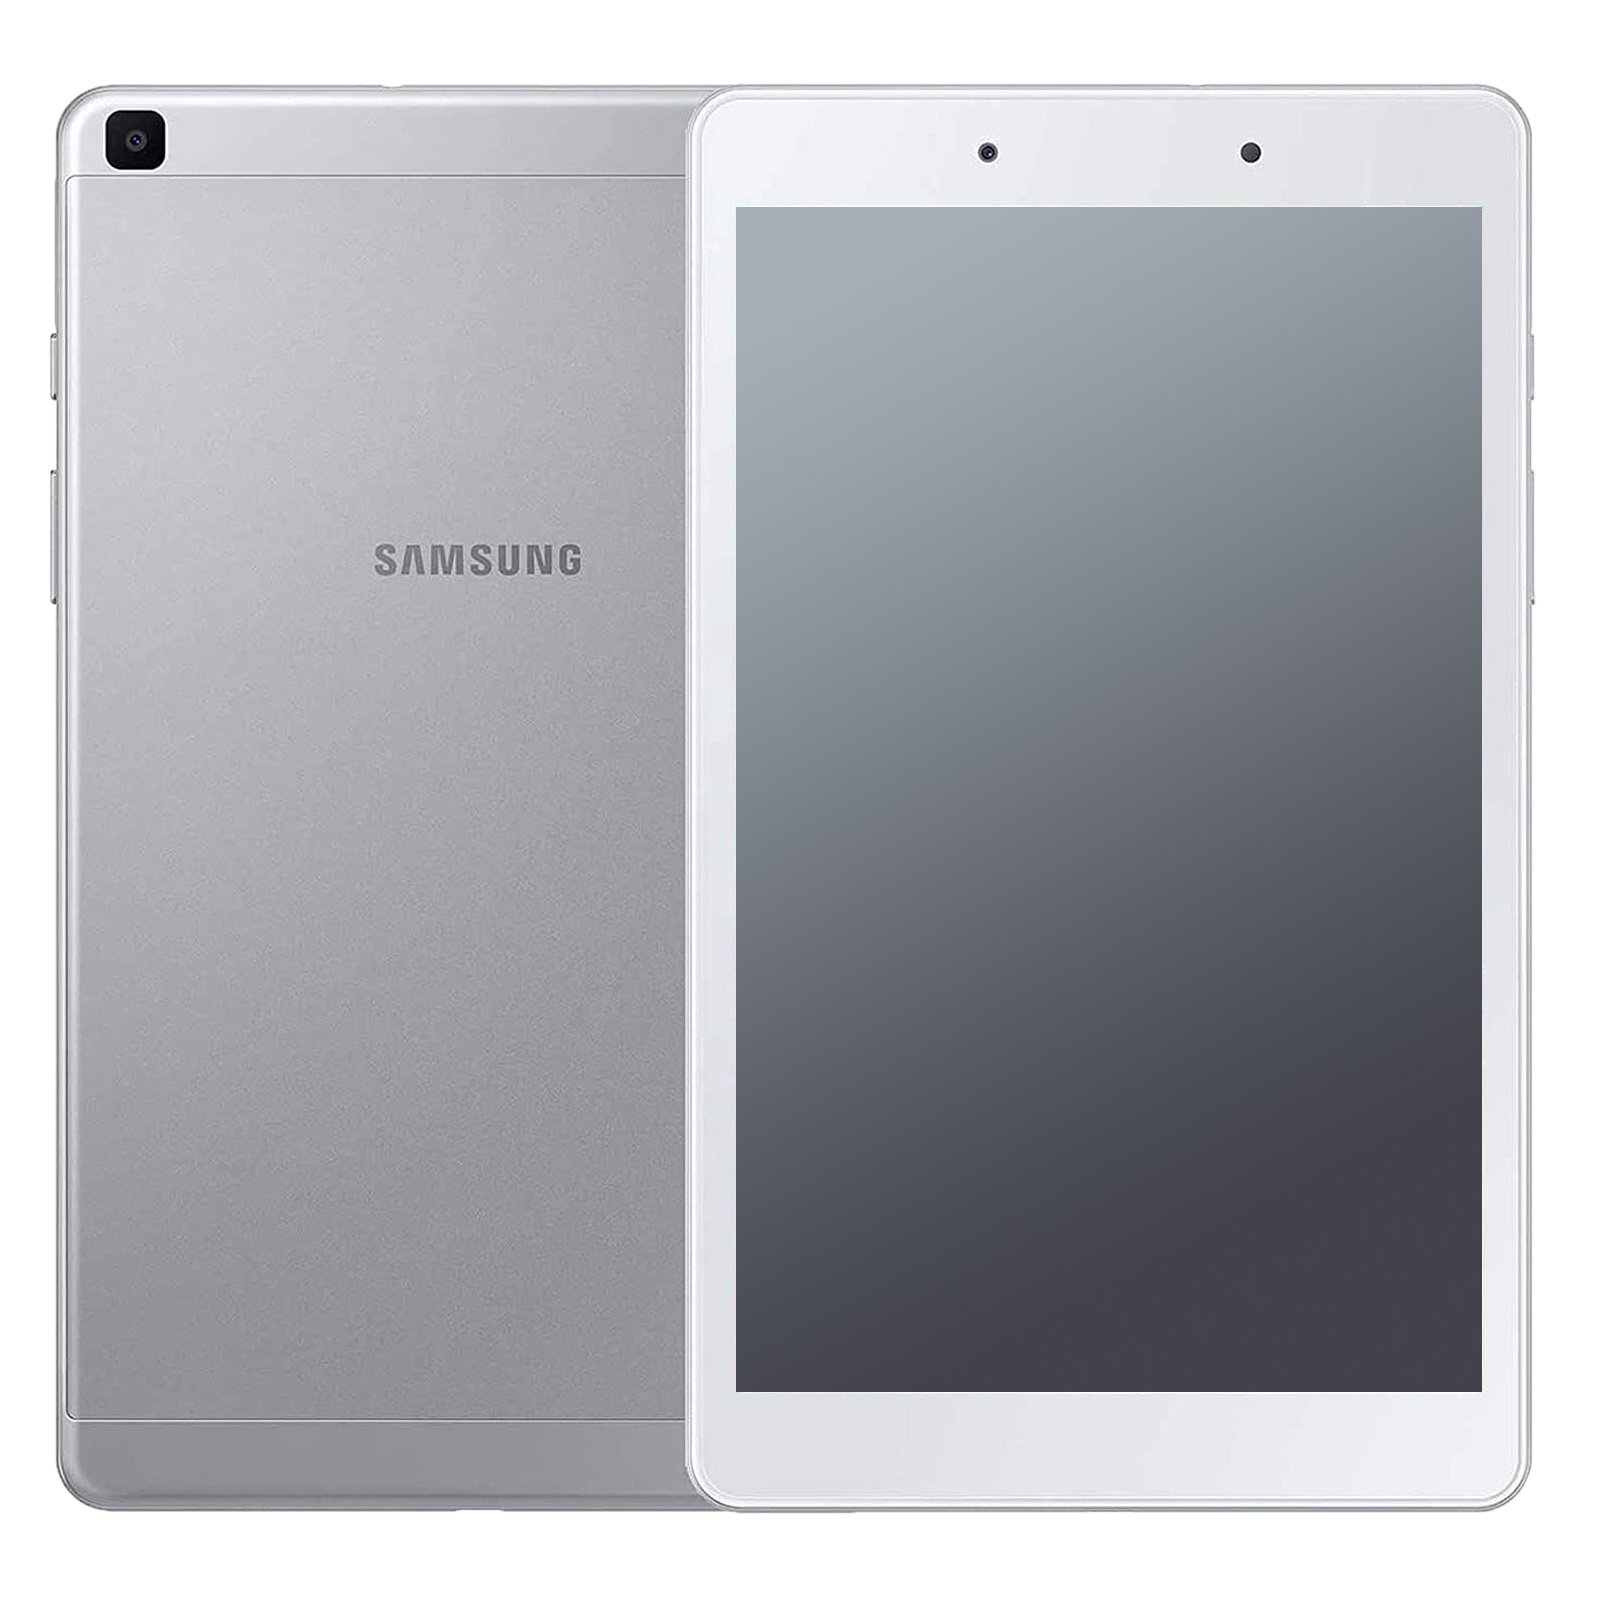 Samsung Galaxy Tab A 8.0 (2019) LTE T295 silber - Ohne Vertrag